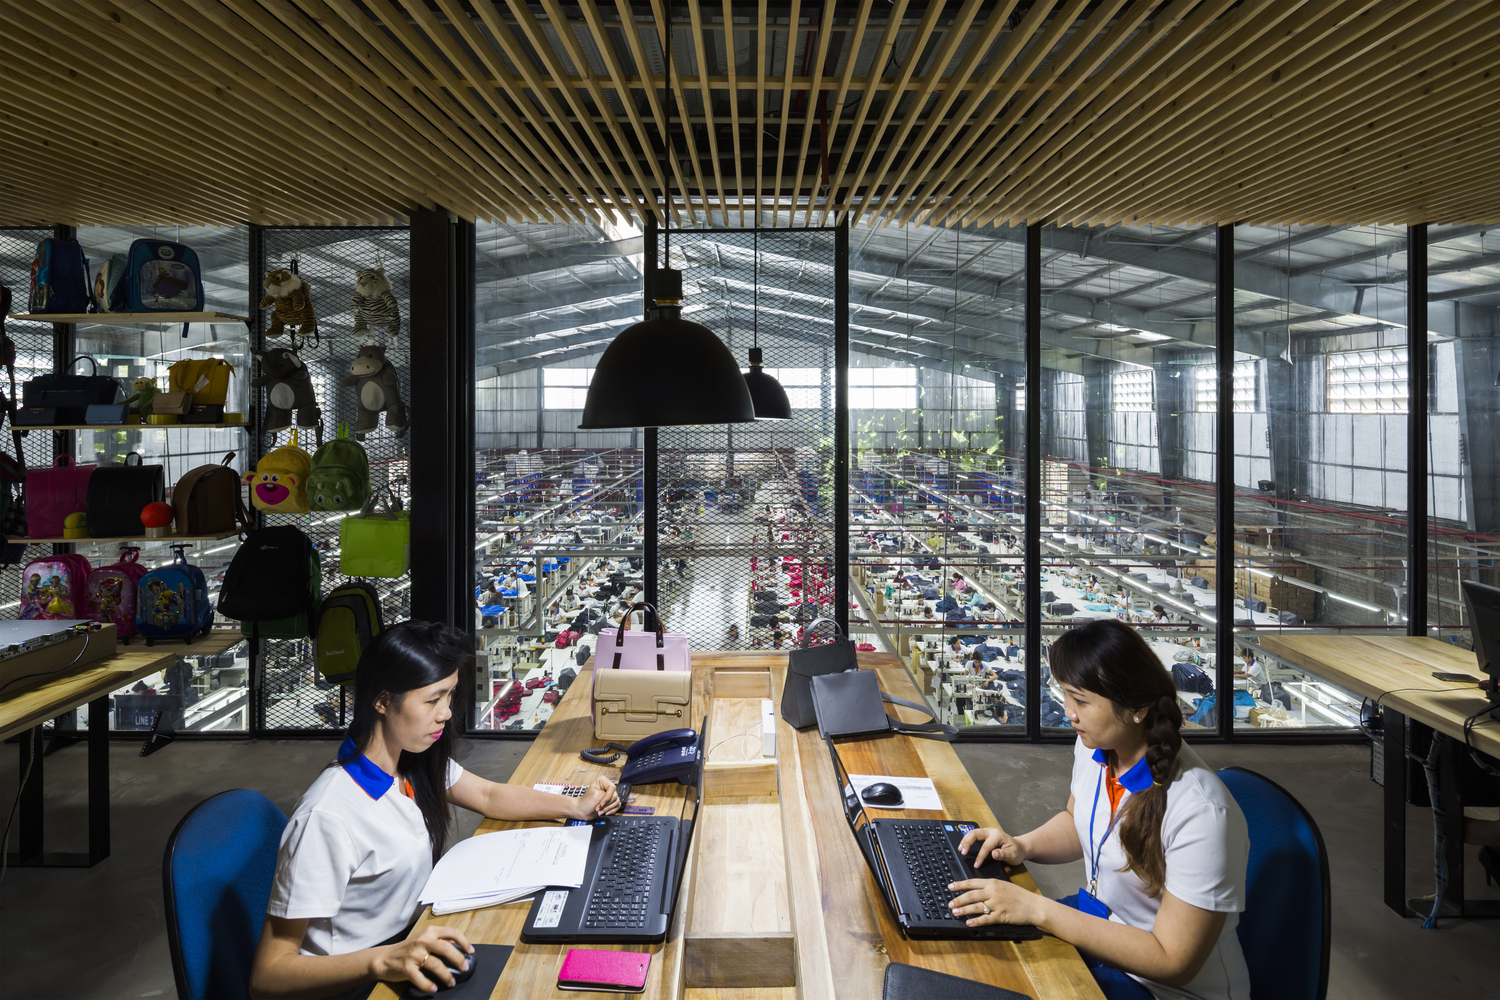 hình ảnh cận cảnh văn phòng làm việc với hai nữ nhân viên ngồi máy tính, xung quanh là giá kệ trưng bày sản phẩm